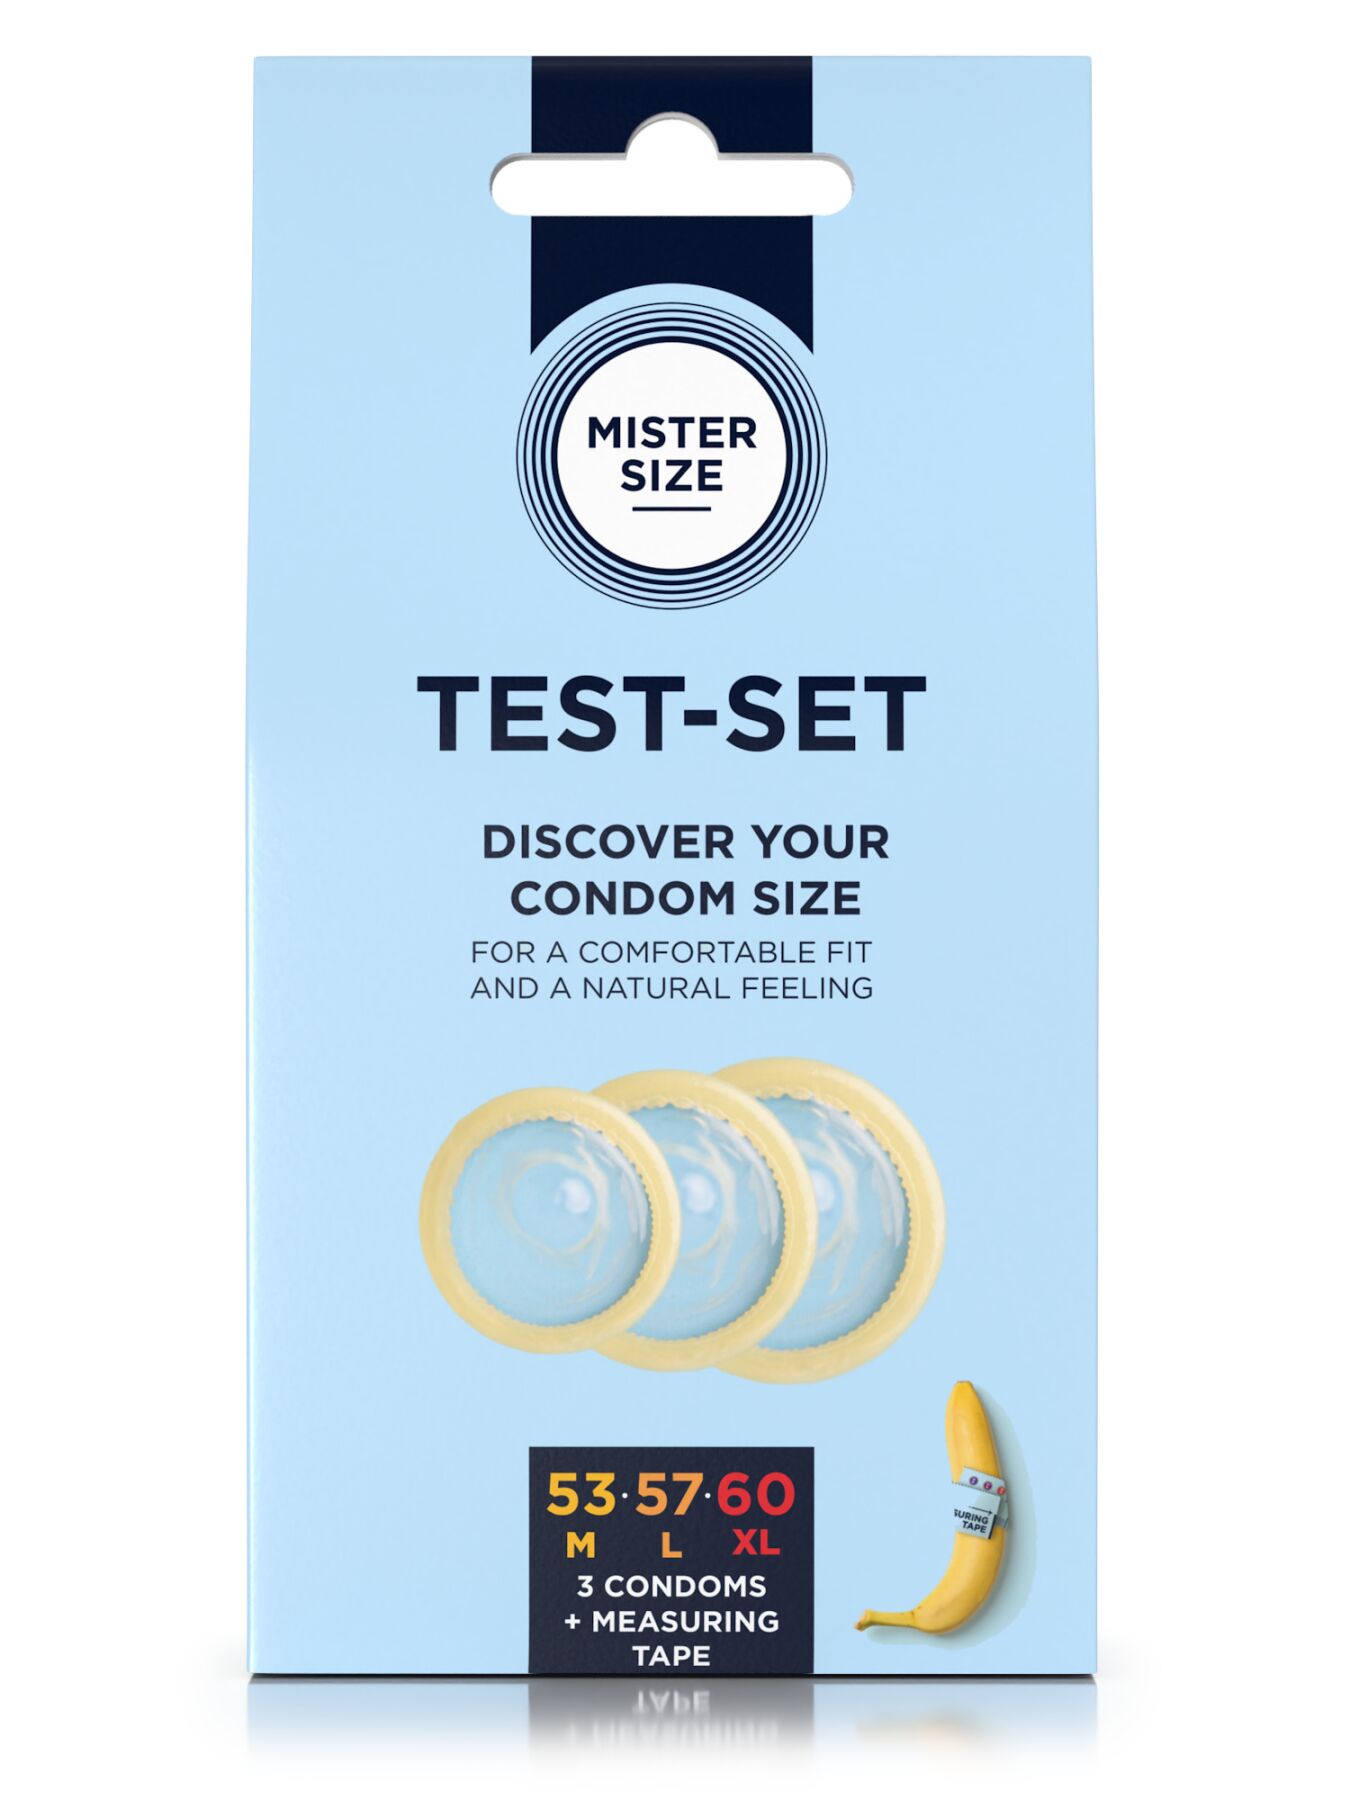    Mister Size test-set 535760, 3  + ,  0,05 